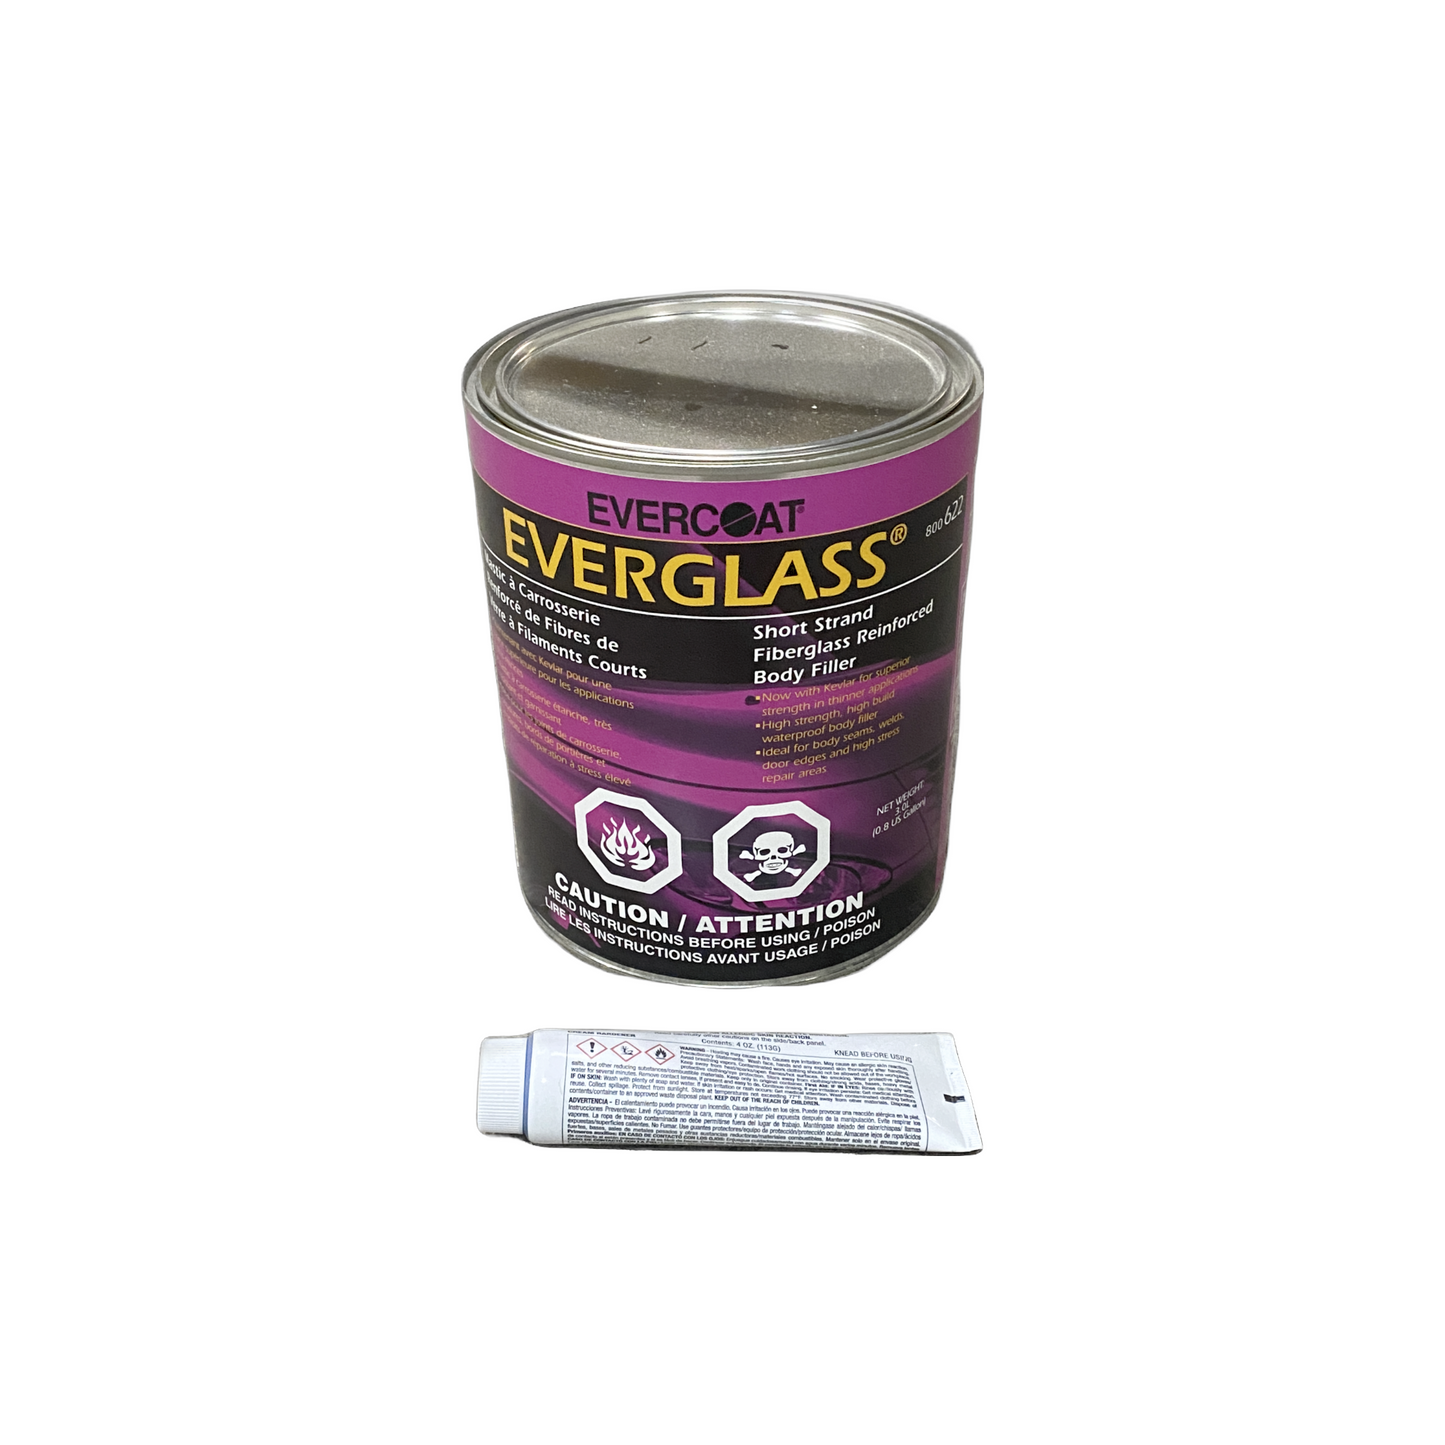 Evercoat Everglass Short Strand Fiberglass Body Filler 3L - Hardener Included - 800632